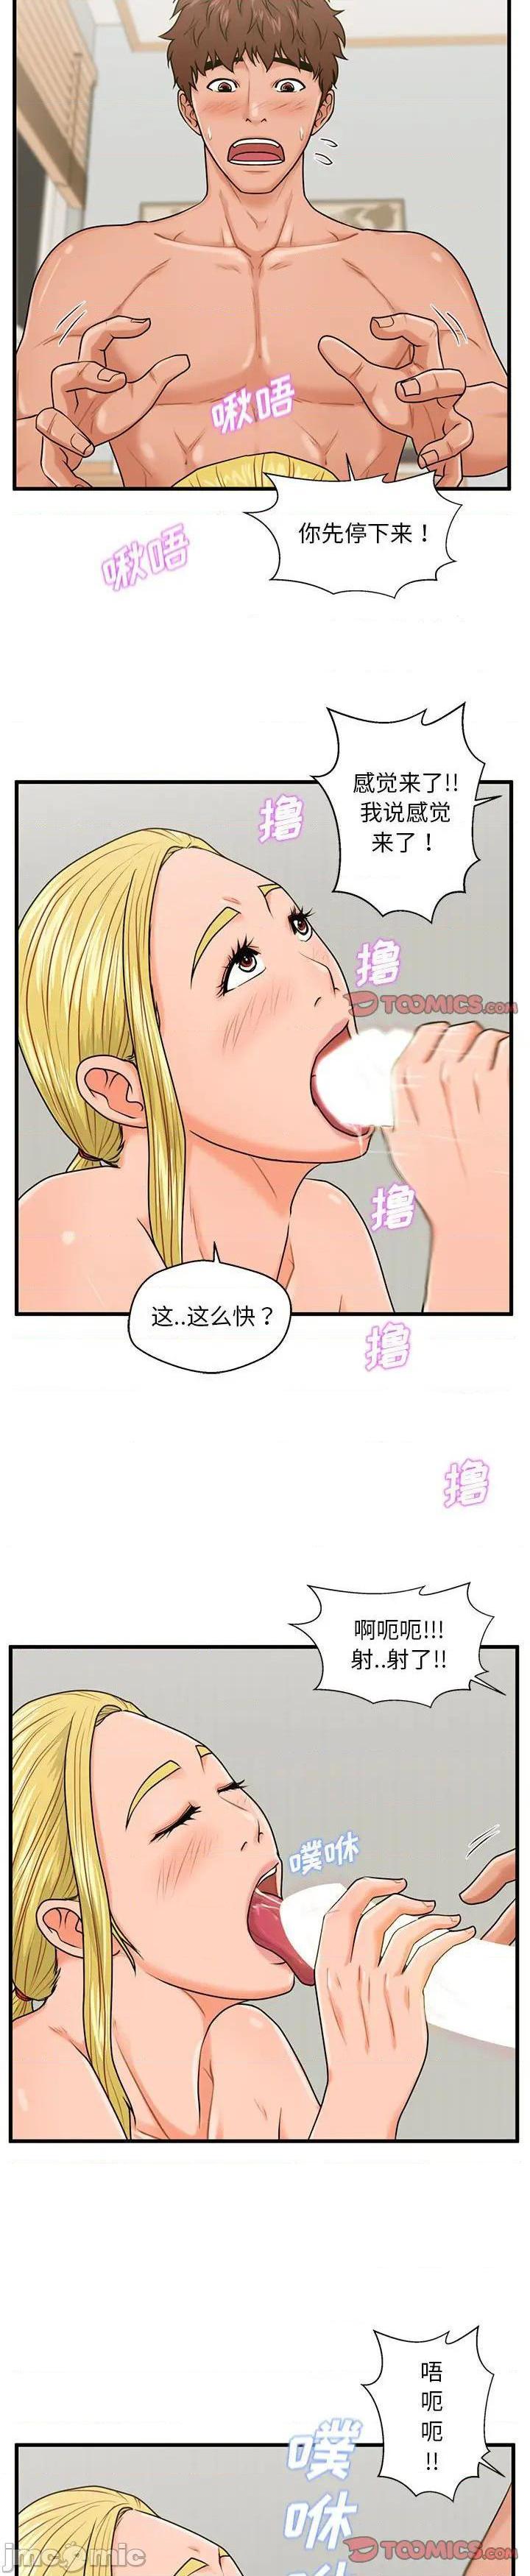 《诚徵女房客(甜蜜合租)》漫画 第20话